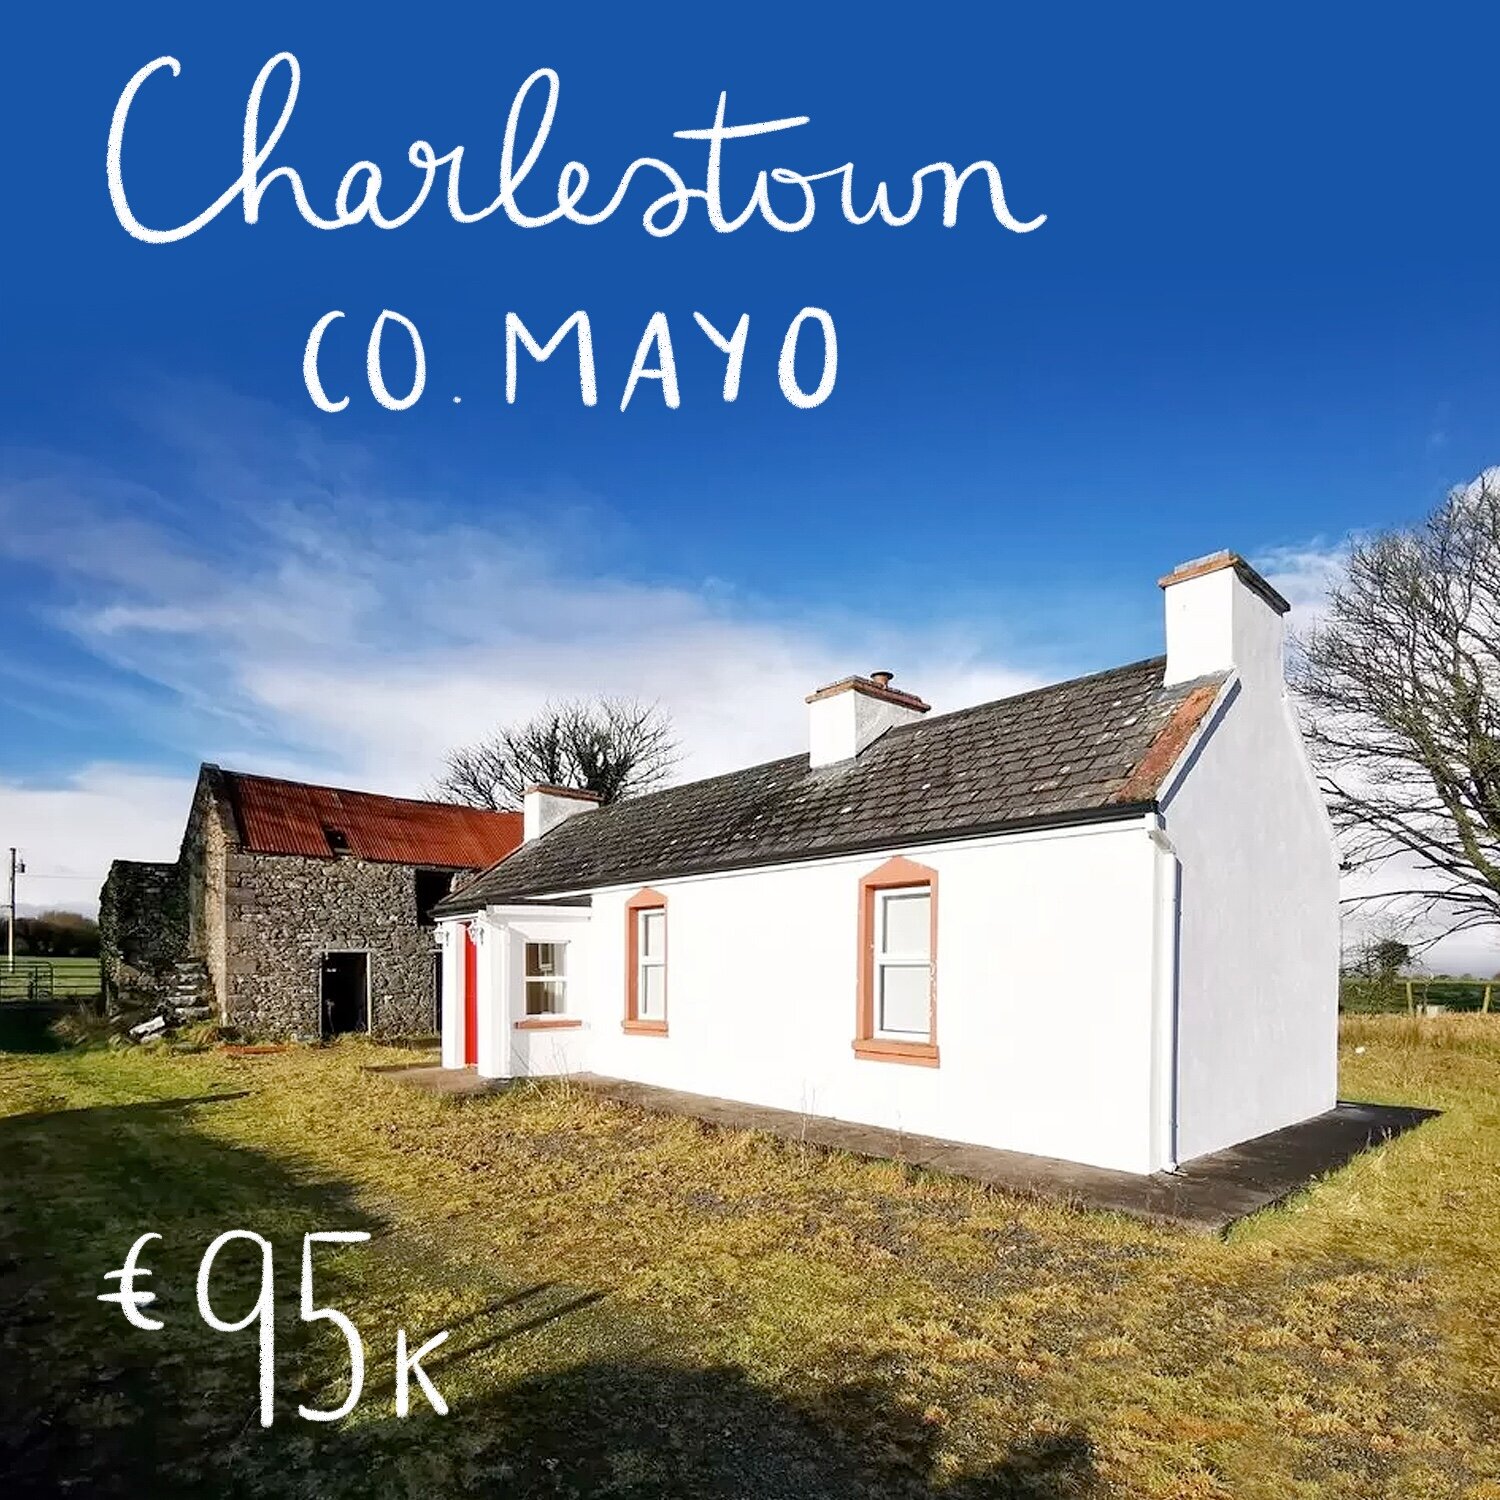 Broher, Charlestown, Co. Mayo. €95k